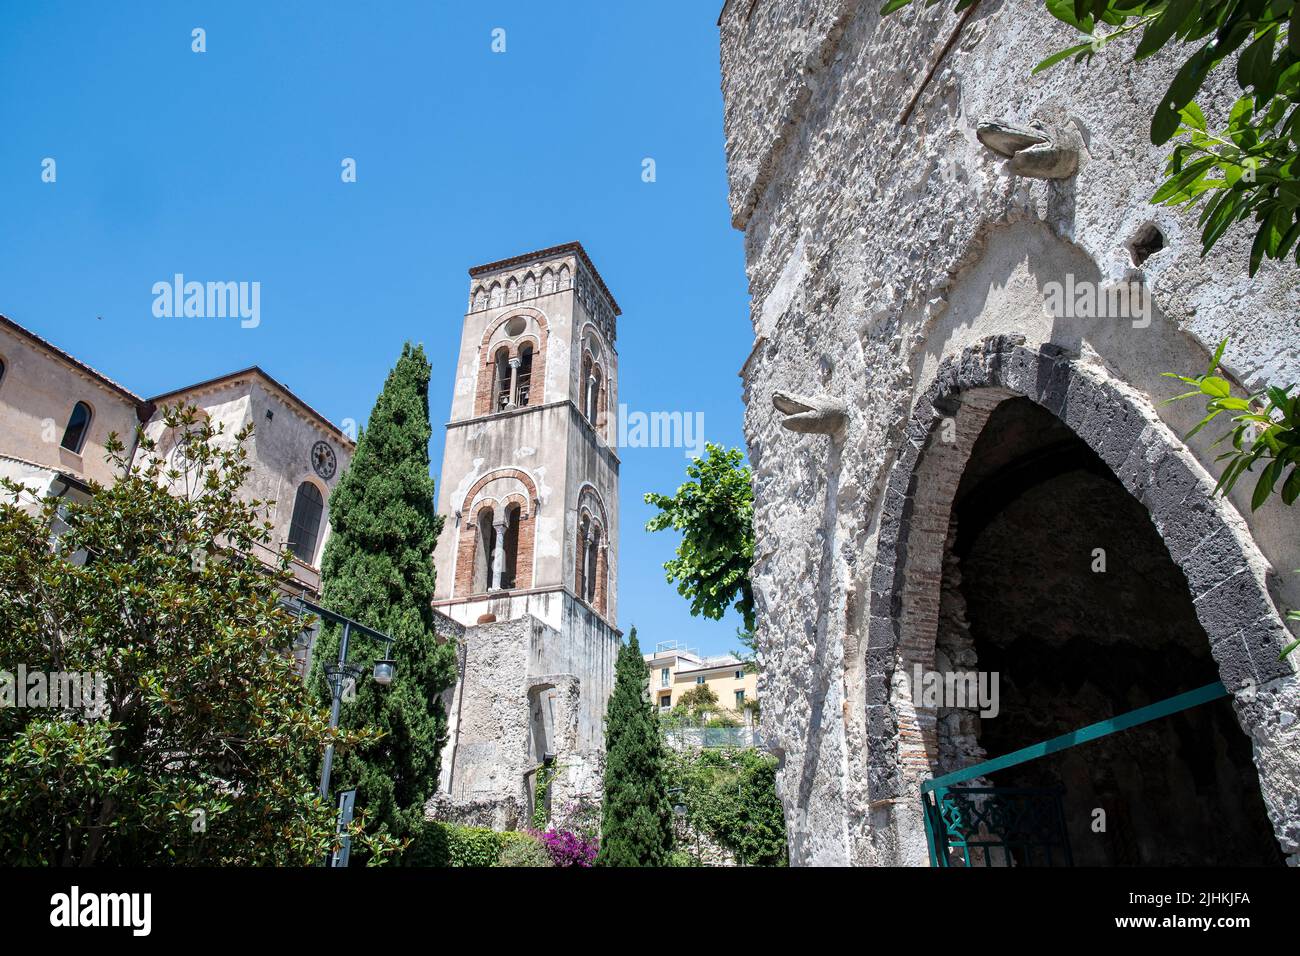 Der Glockenturm der Kathedrale ragt in der wunderschönen Stadt Ravello an der Amalfiküste, Italien, in den Himmel. Stockfoto